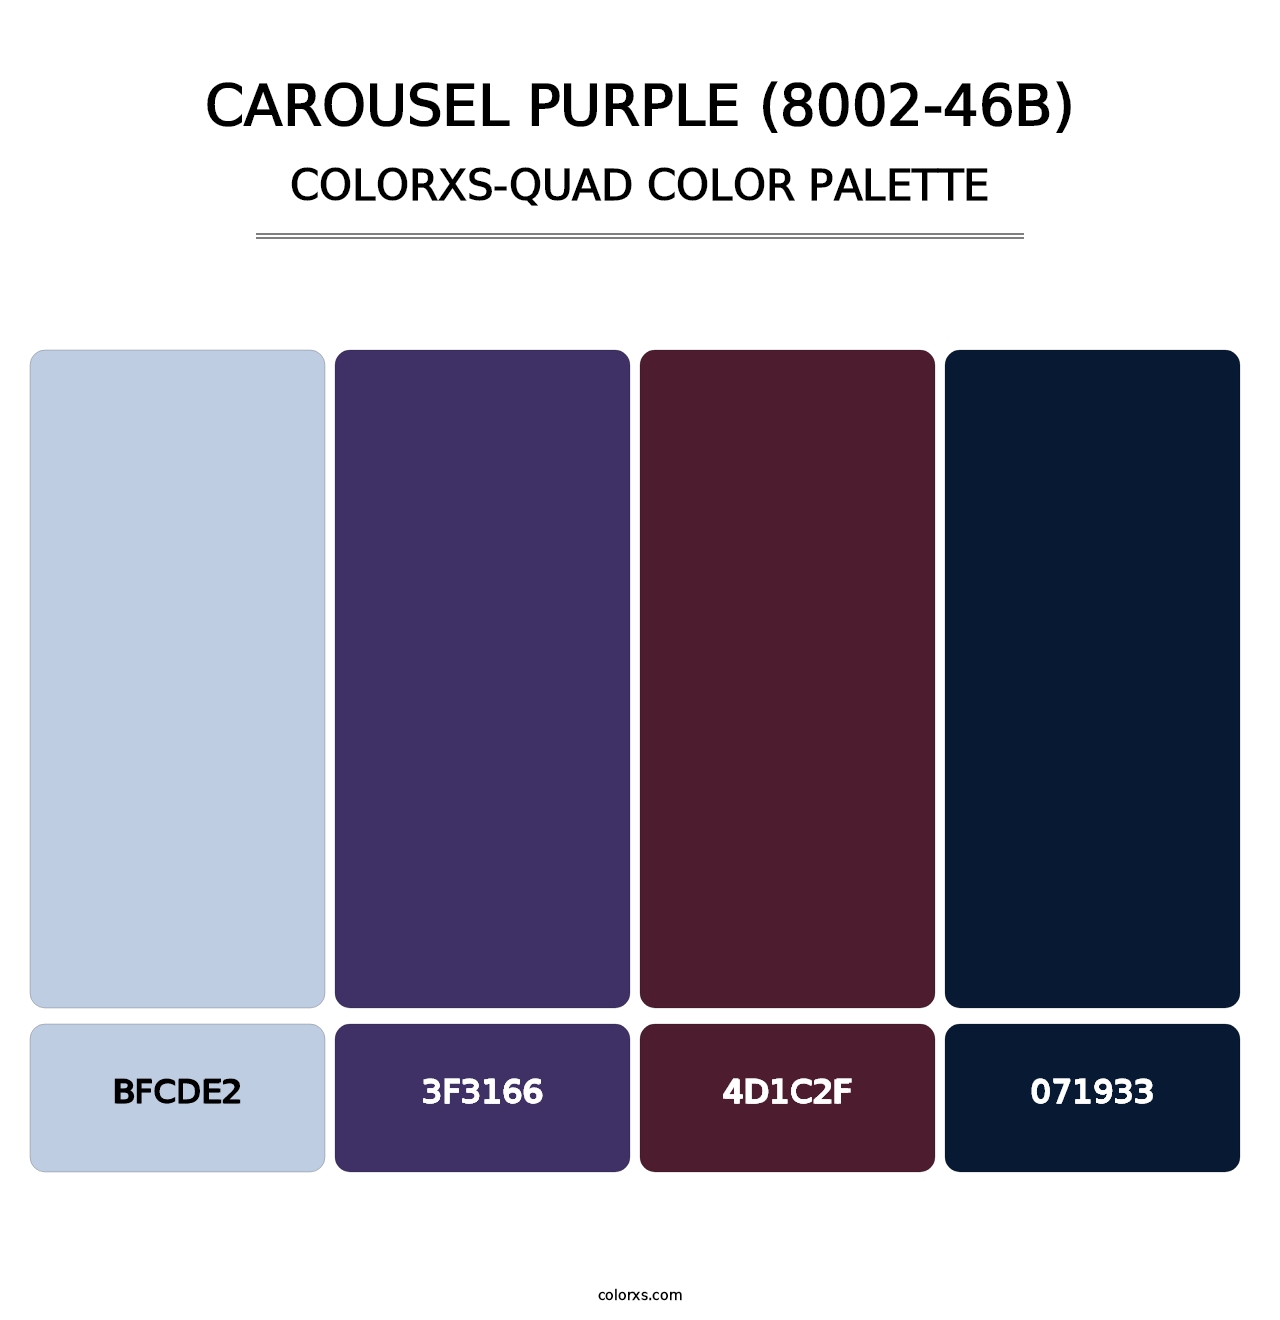 Carousel Purple (8002-46B) - Colorxs Quad Palette